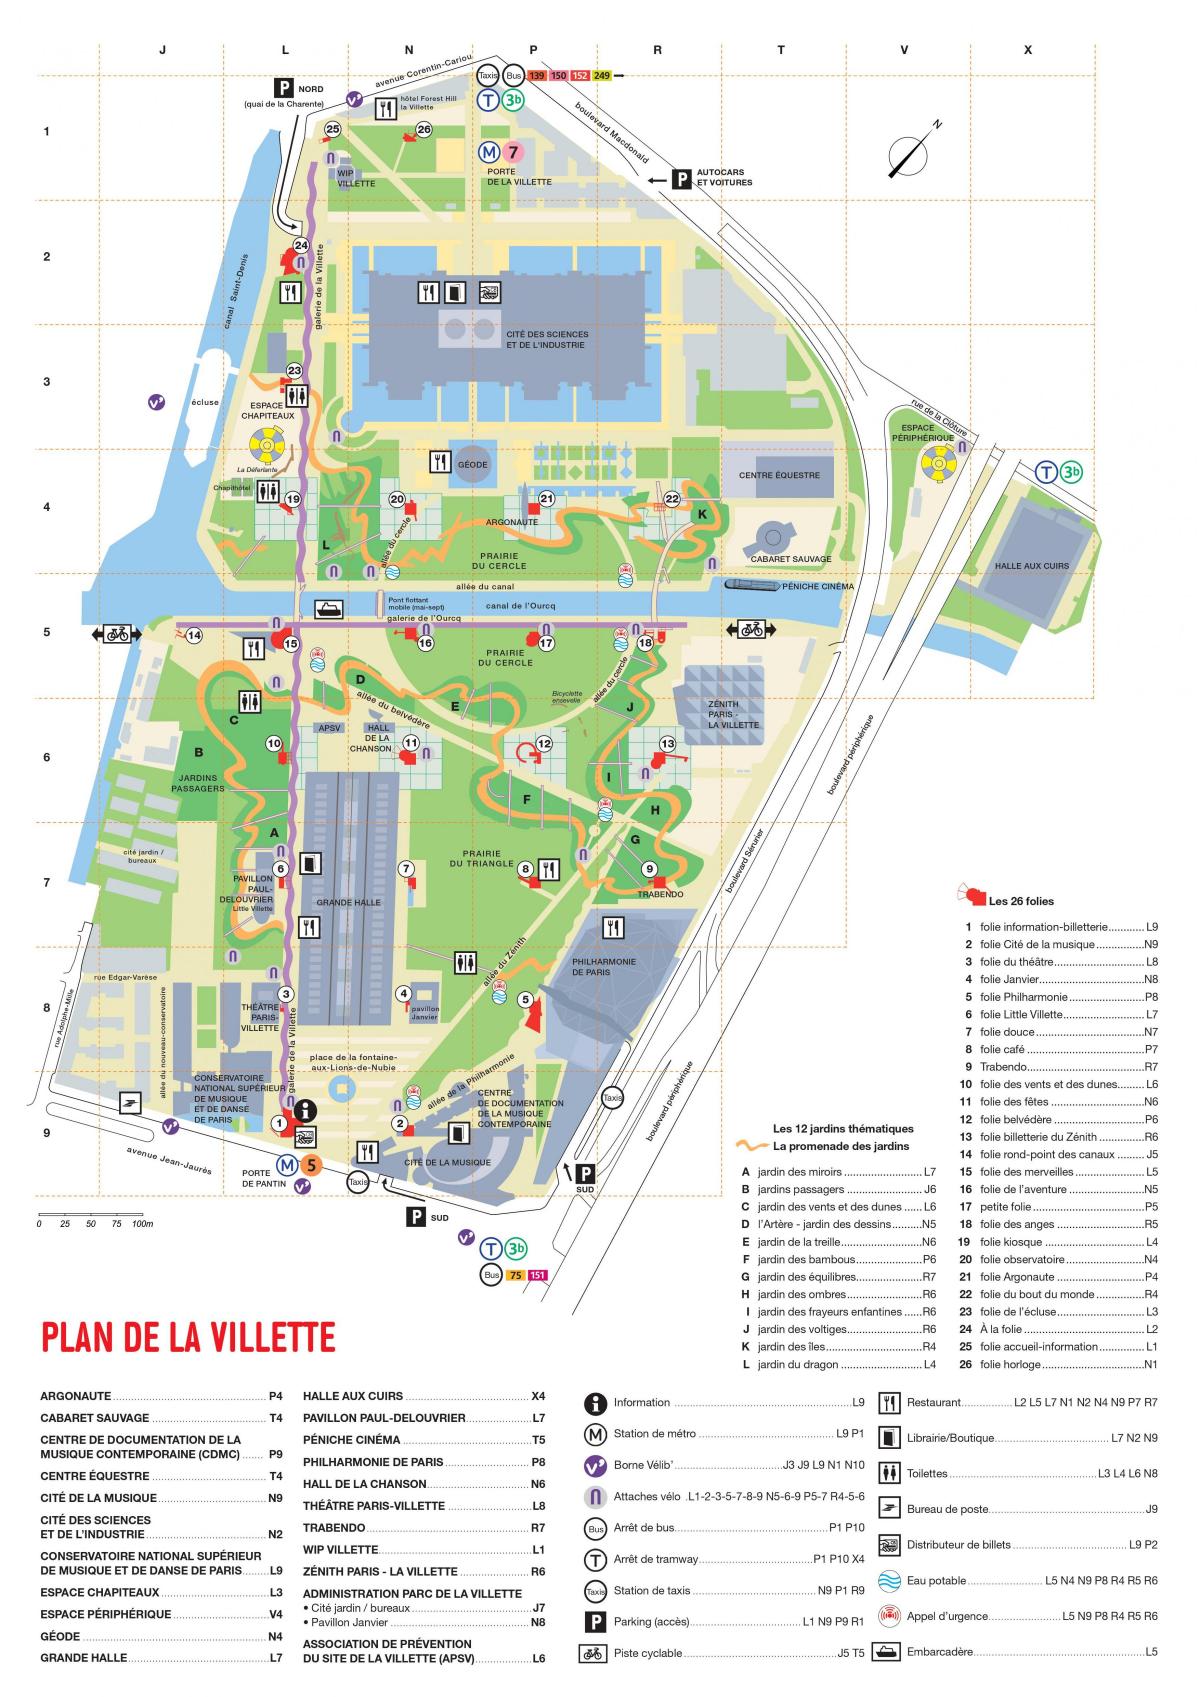 Map of The Parc de la Villette